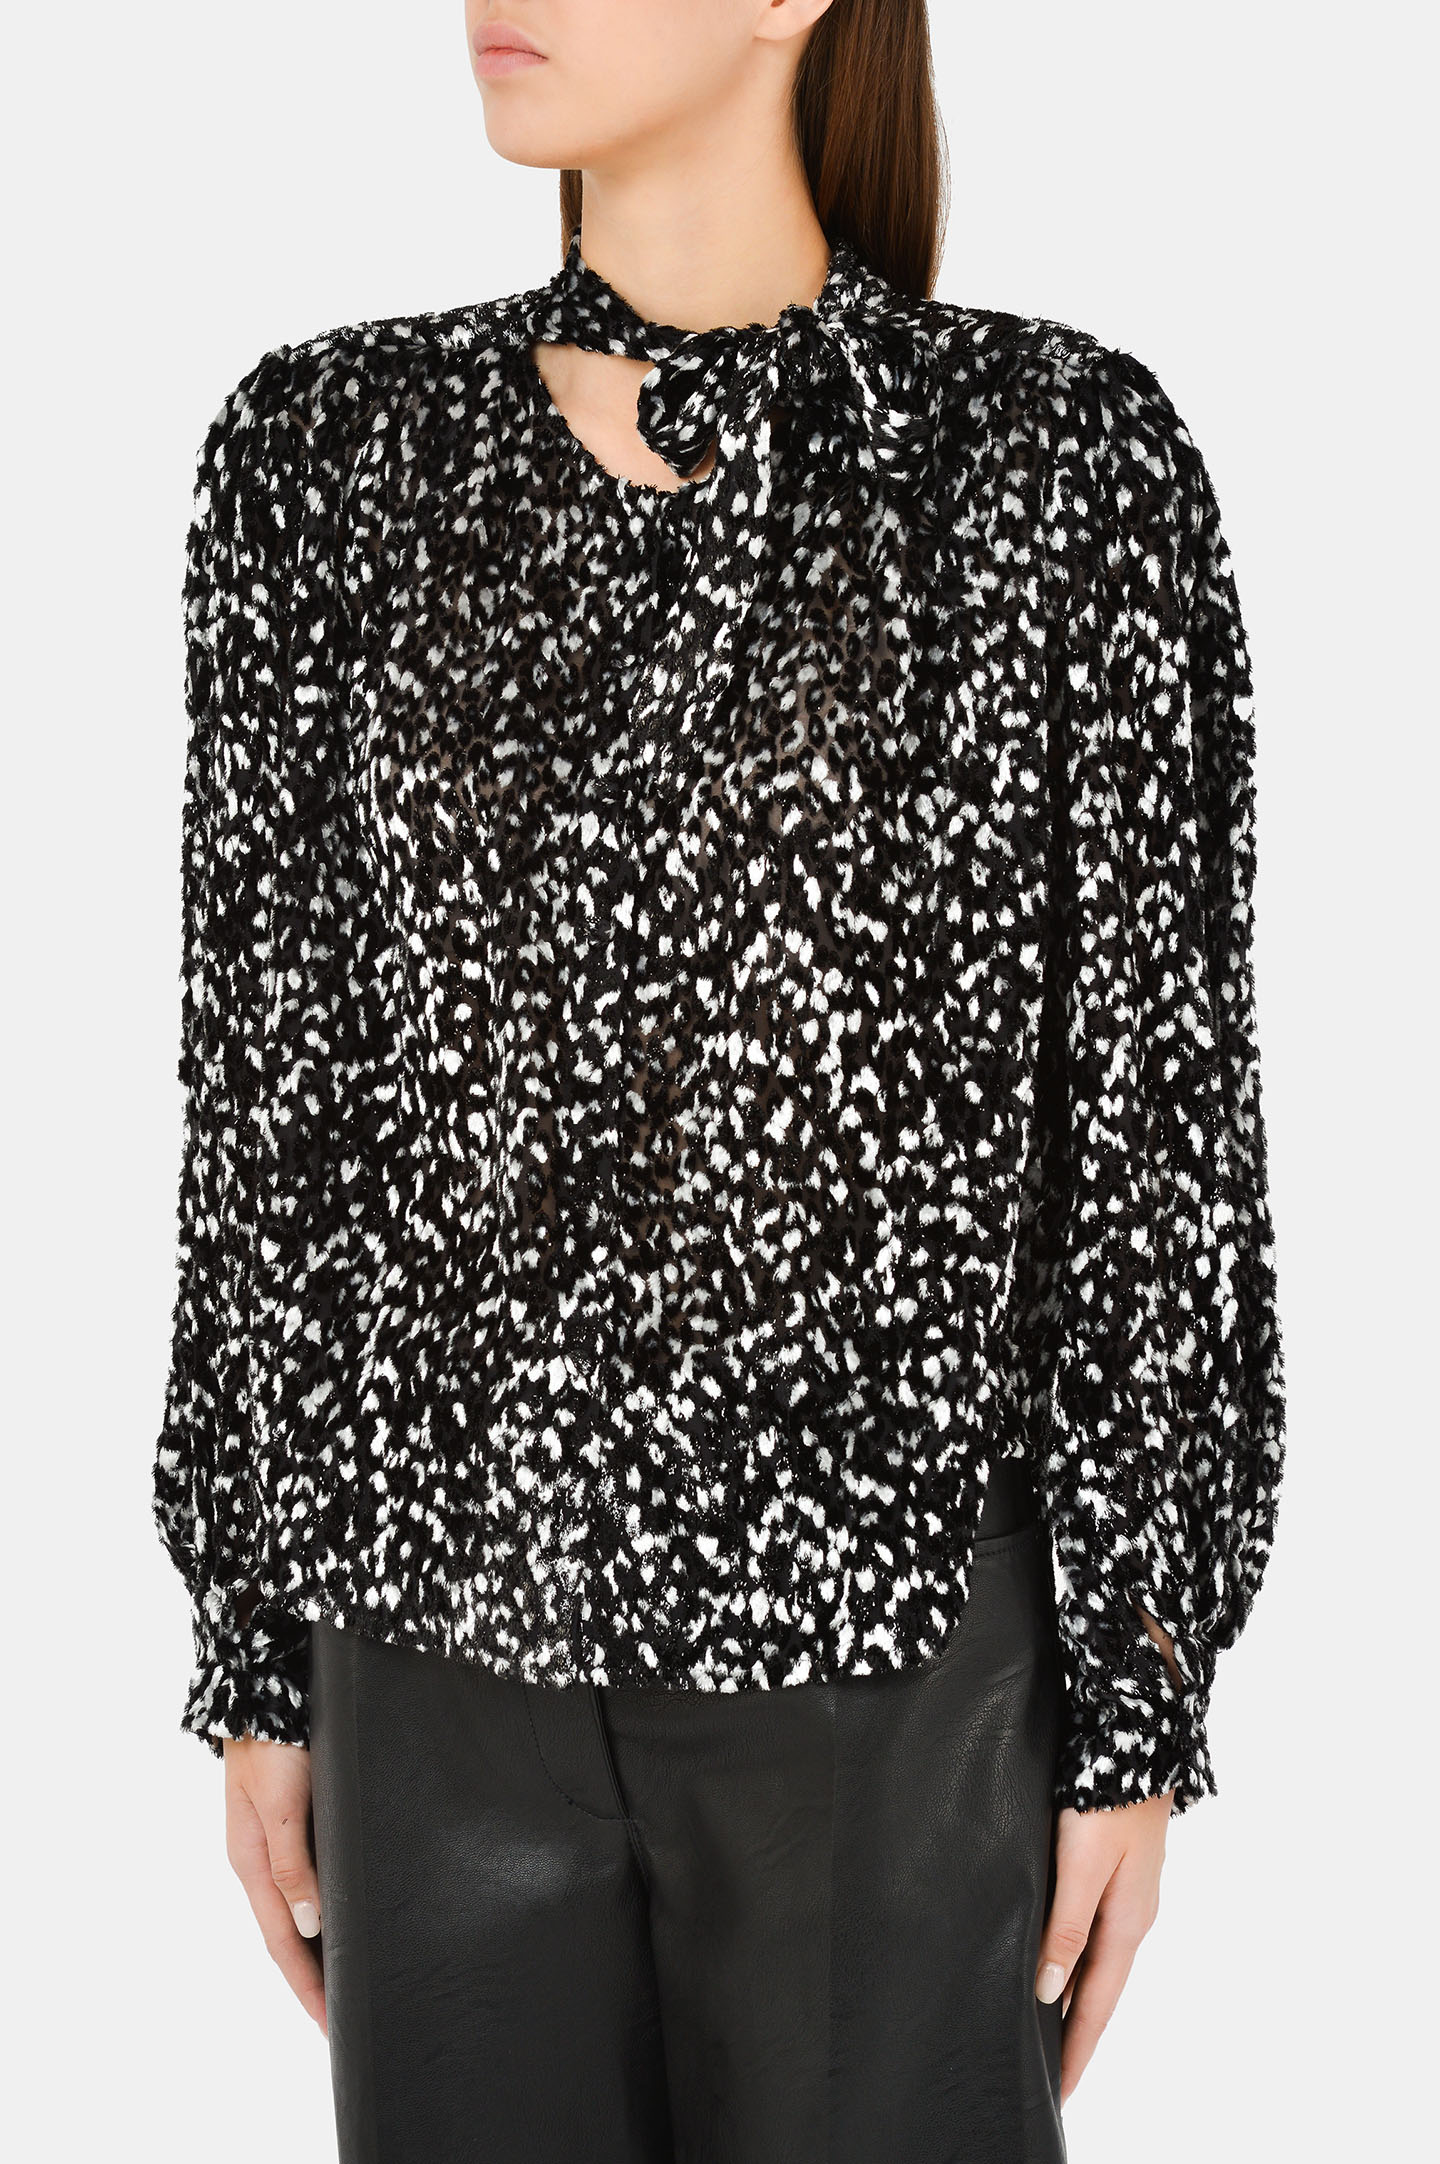 Блуза IRO WM16POUNA, цвет: Черно-белый, Женский